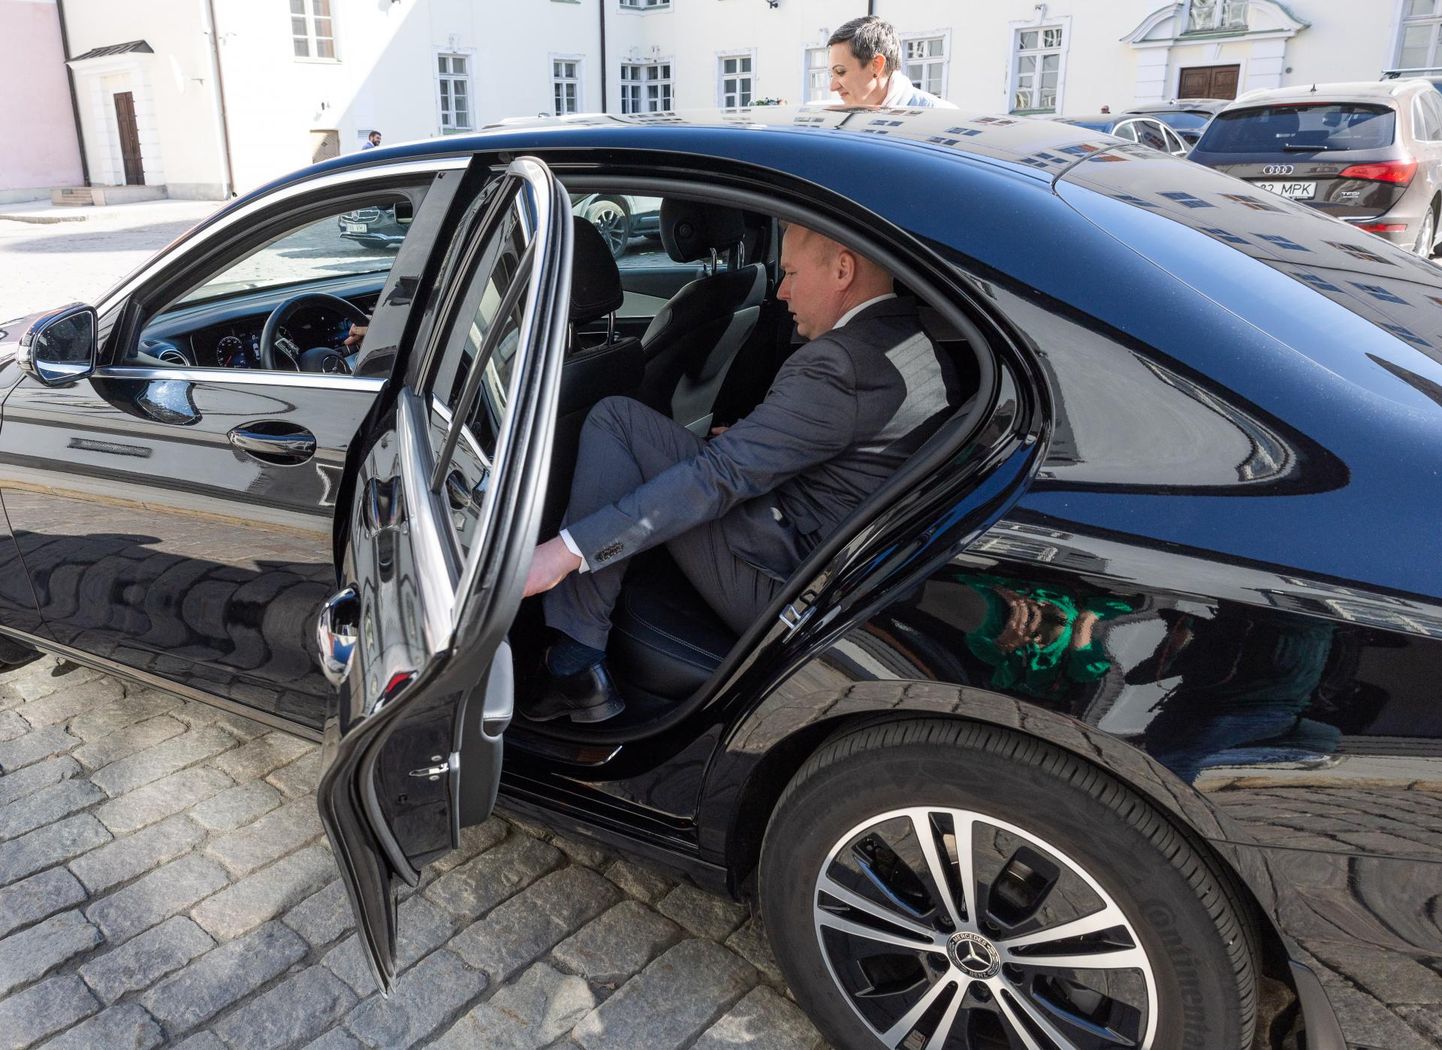 Что налог на автомобили предназначен для того, чтобы люди меньше пользовались автомобилем, министр финансов Март Вырклаэв утверждает, сидя в автомобиле.